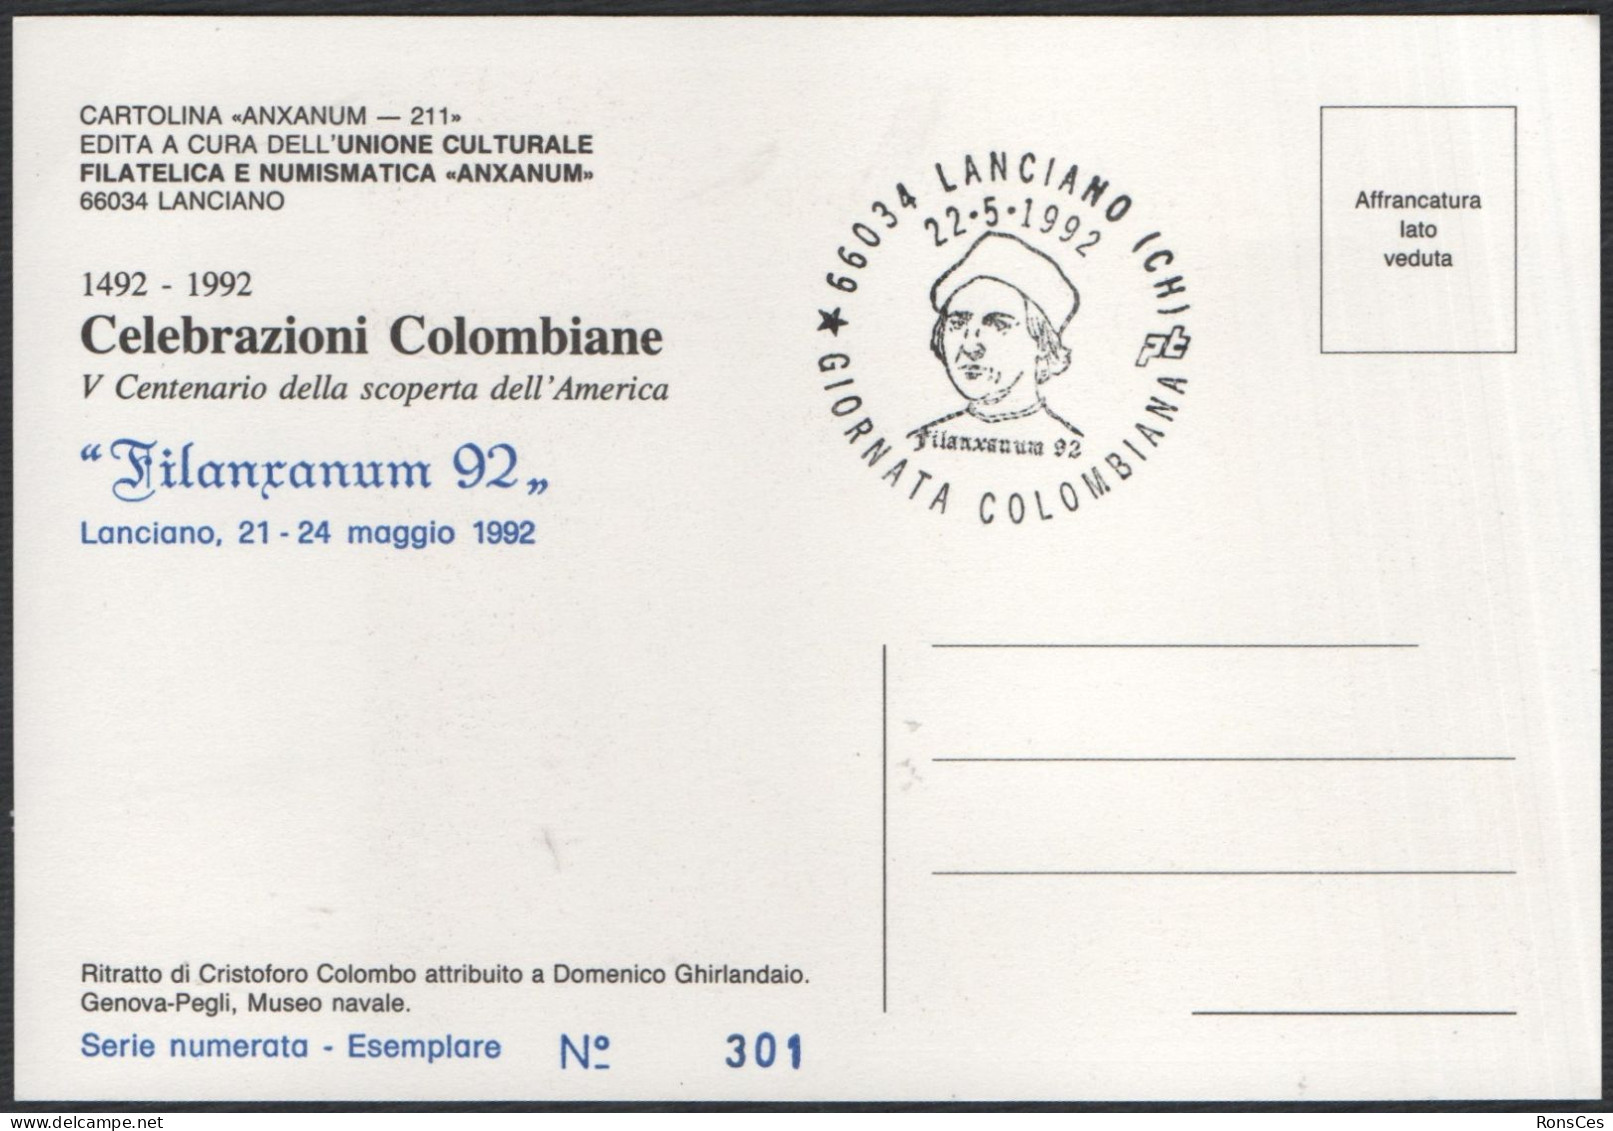 ITALIA LANCIANO (CH) 22.05.1992 - FILANXANUM '92 - GIORNATA COLOMBIANA - CARTOLINA UFFICIALE - A - Briefmarkenausstellungen